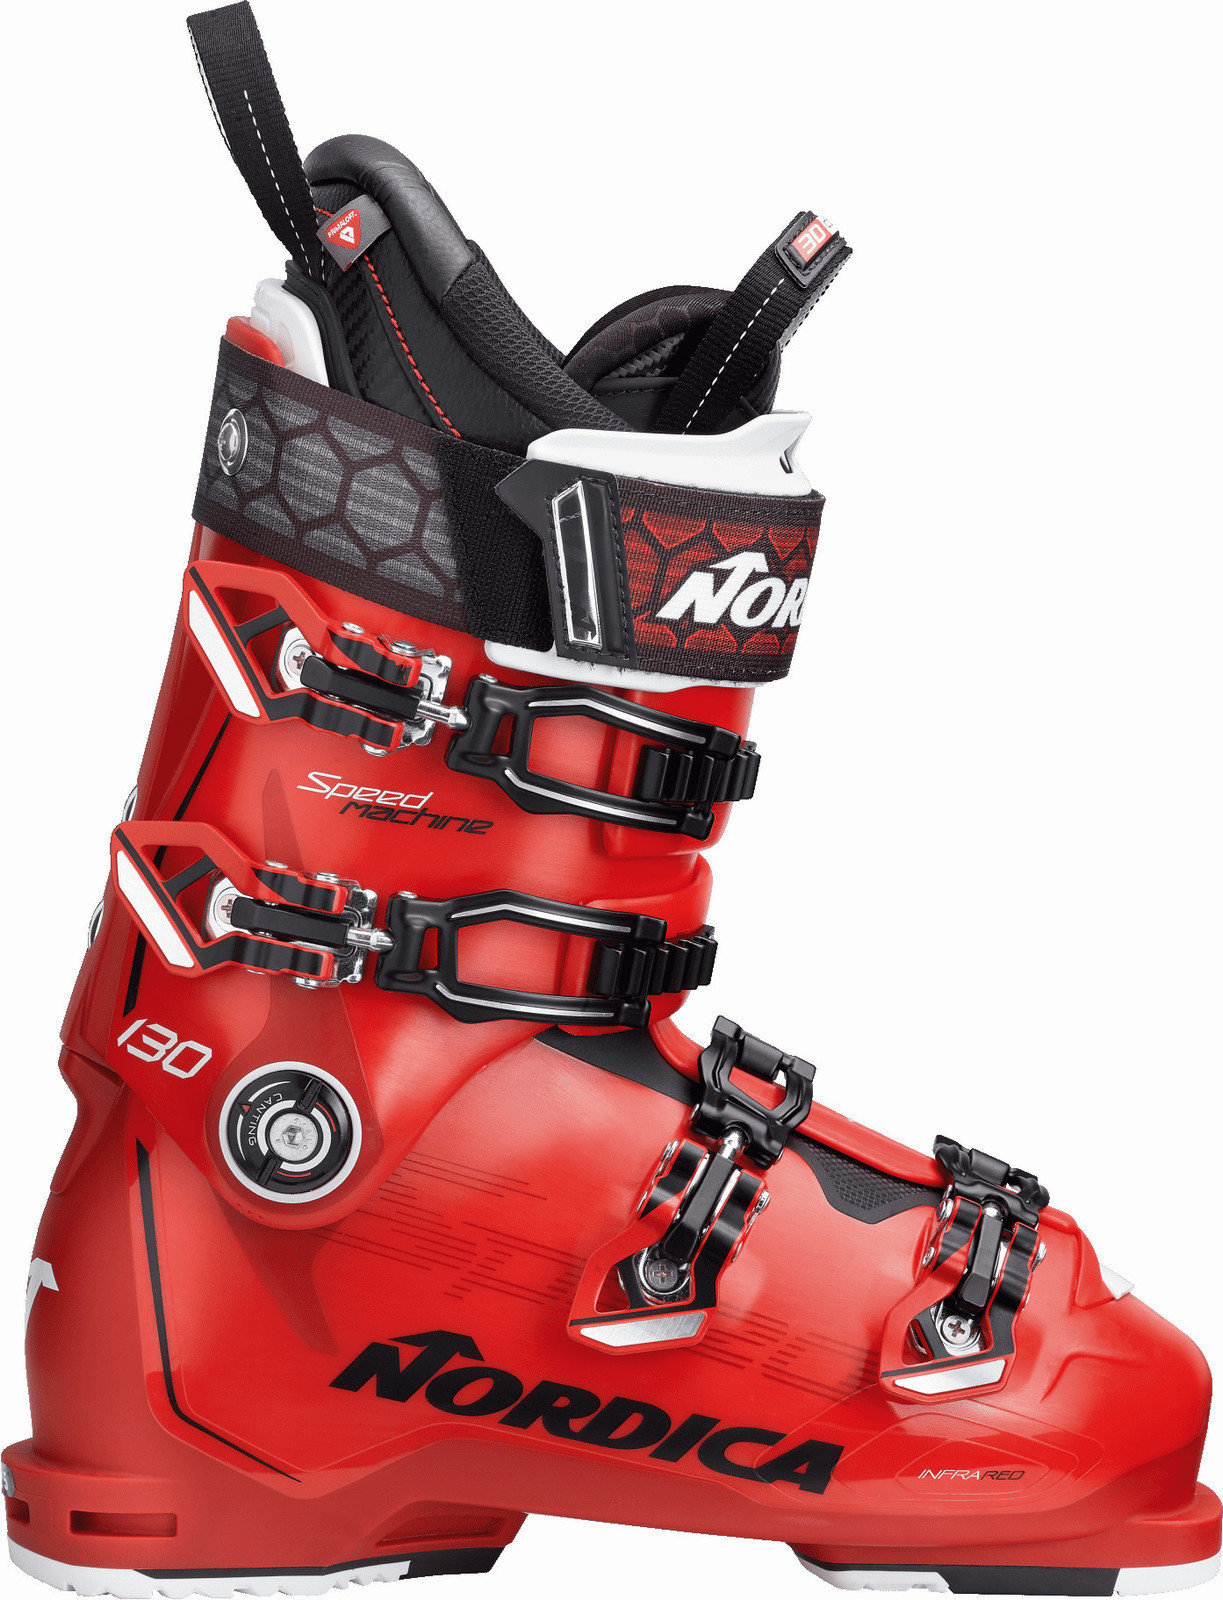 Alpin-Skischuhe Nordica Speedmachine 130 Red-Black-White 27.5 18/19